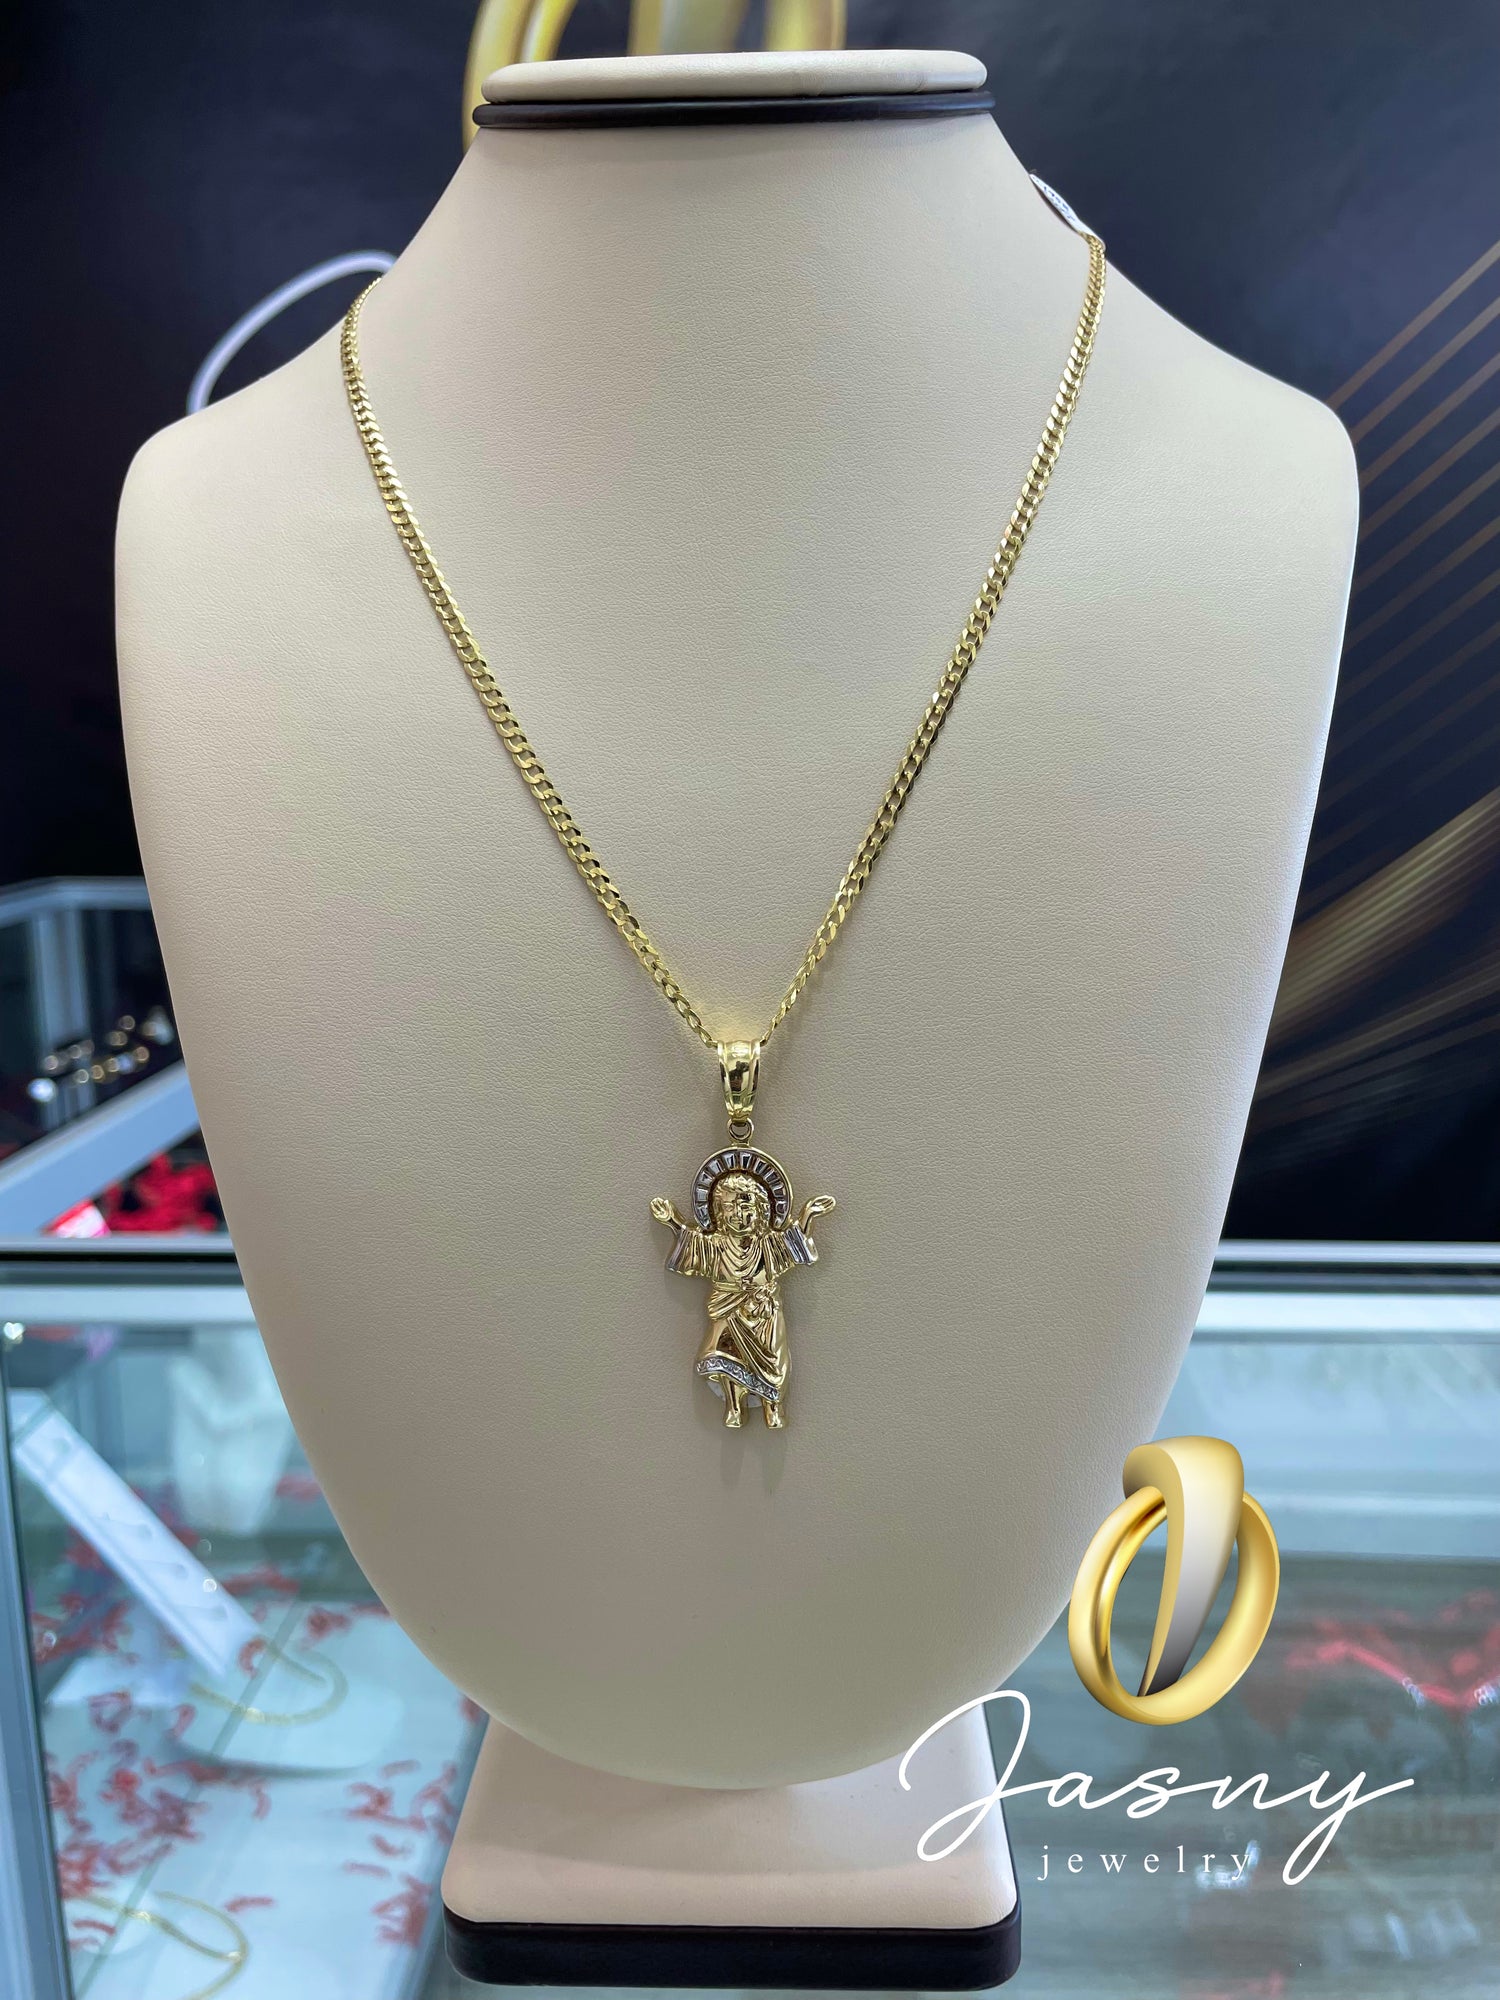 💎 se niño 💎 Oro 10k – Jasny Jewelry